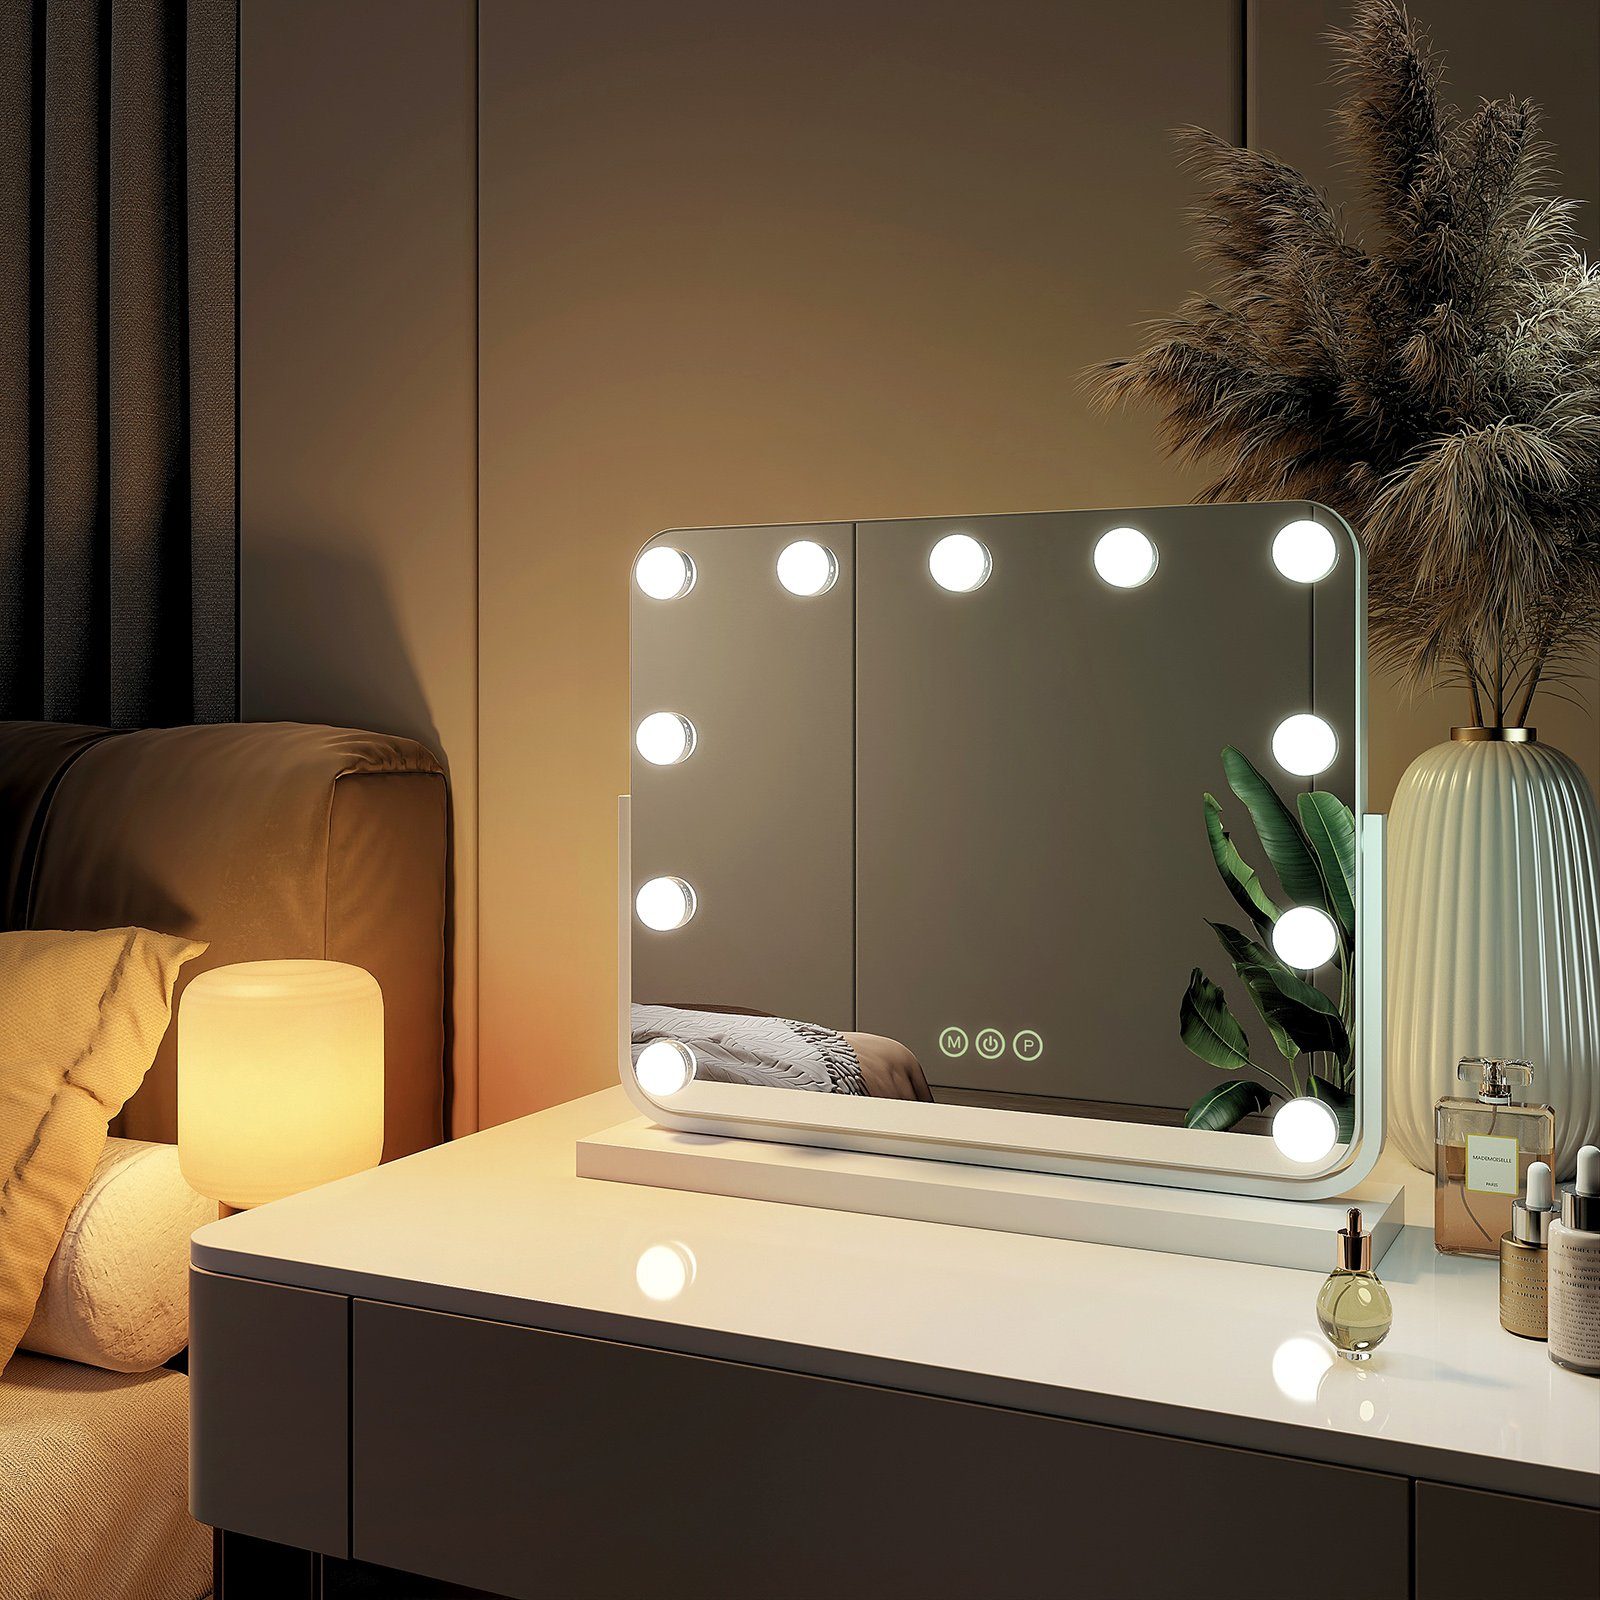 EMKE Kosmetikspiegel Hollywood Spiegel mit Beleuchtung 360 ° Drehbar Tischspiegel, 3 Farbe Licht,Dimmbar,Speicherfunktion,7 x Vergrößerungsspiegel Weiß